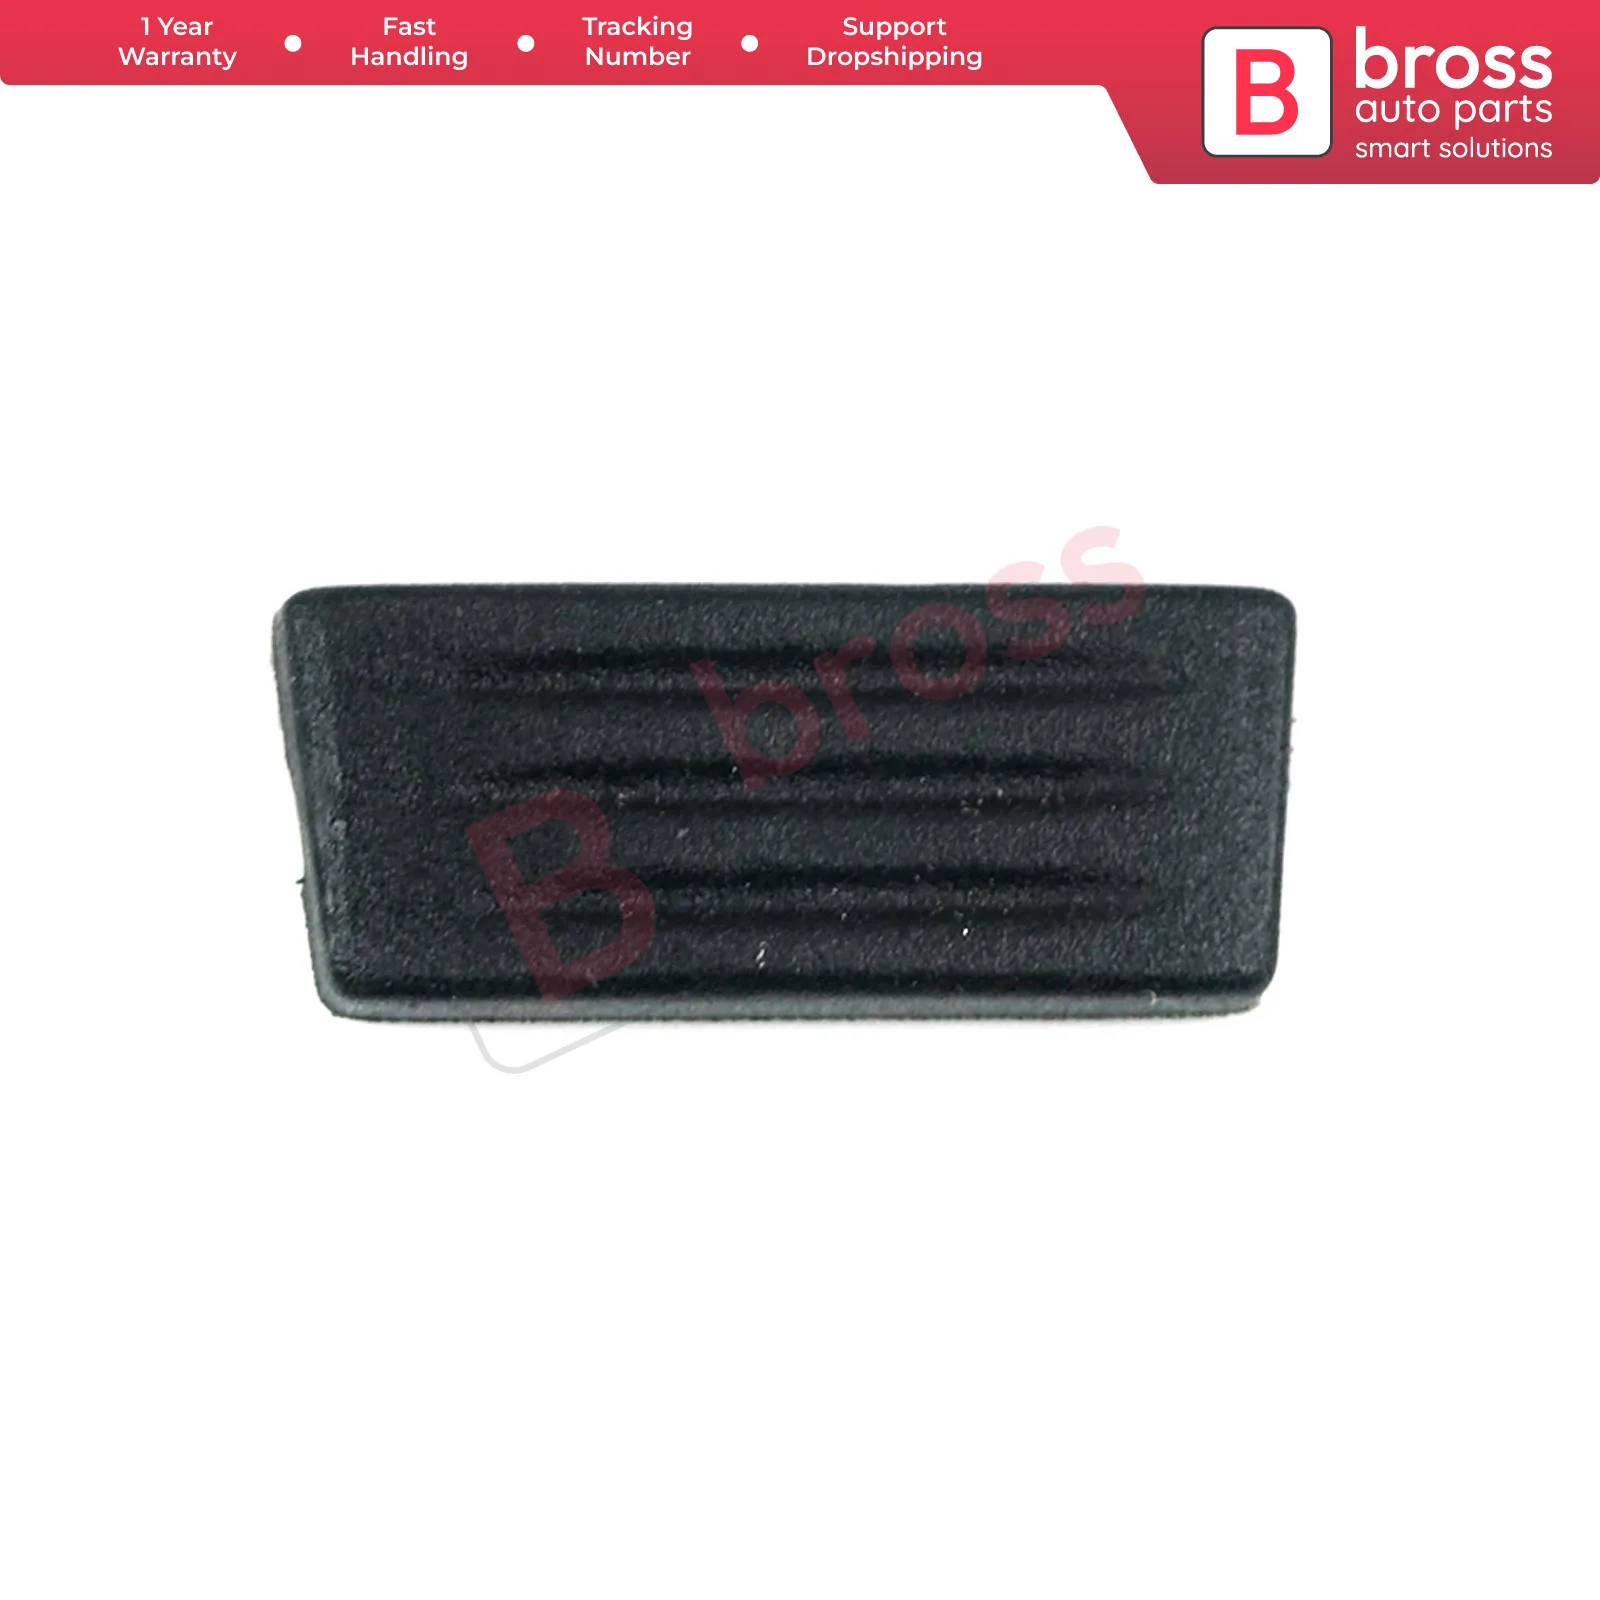 

Bross Auto Parts BDP521 1-Button Remote Key Housing Case Cover Black Color Button for Fiat Punto Doblo Bravo ship From Turkey